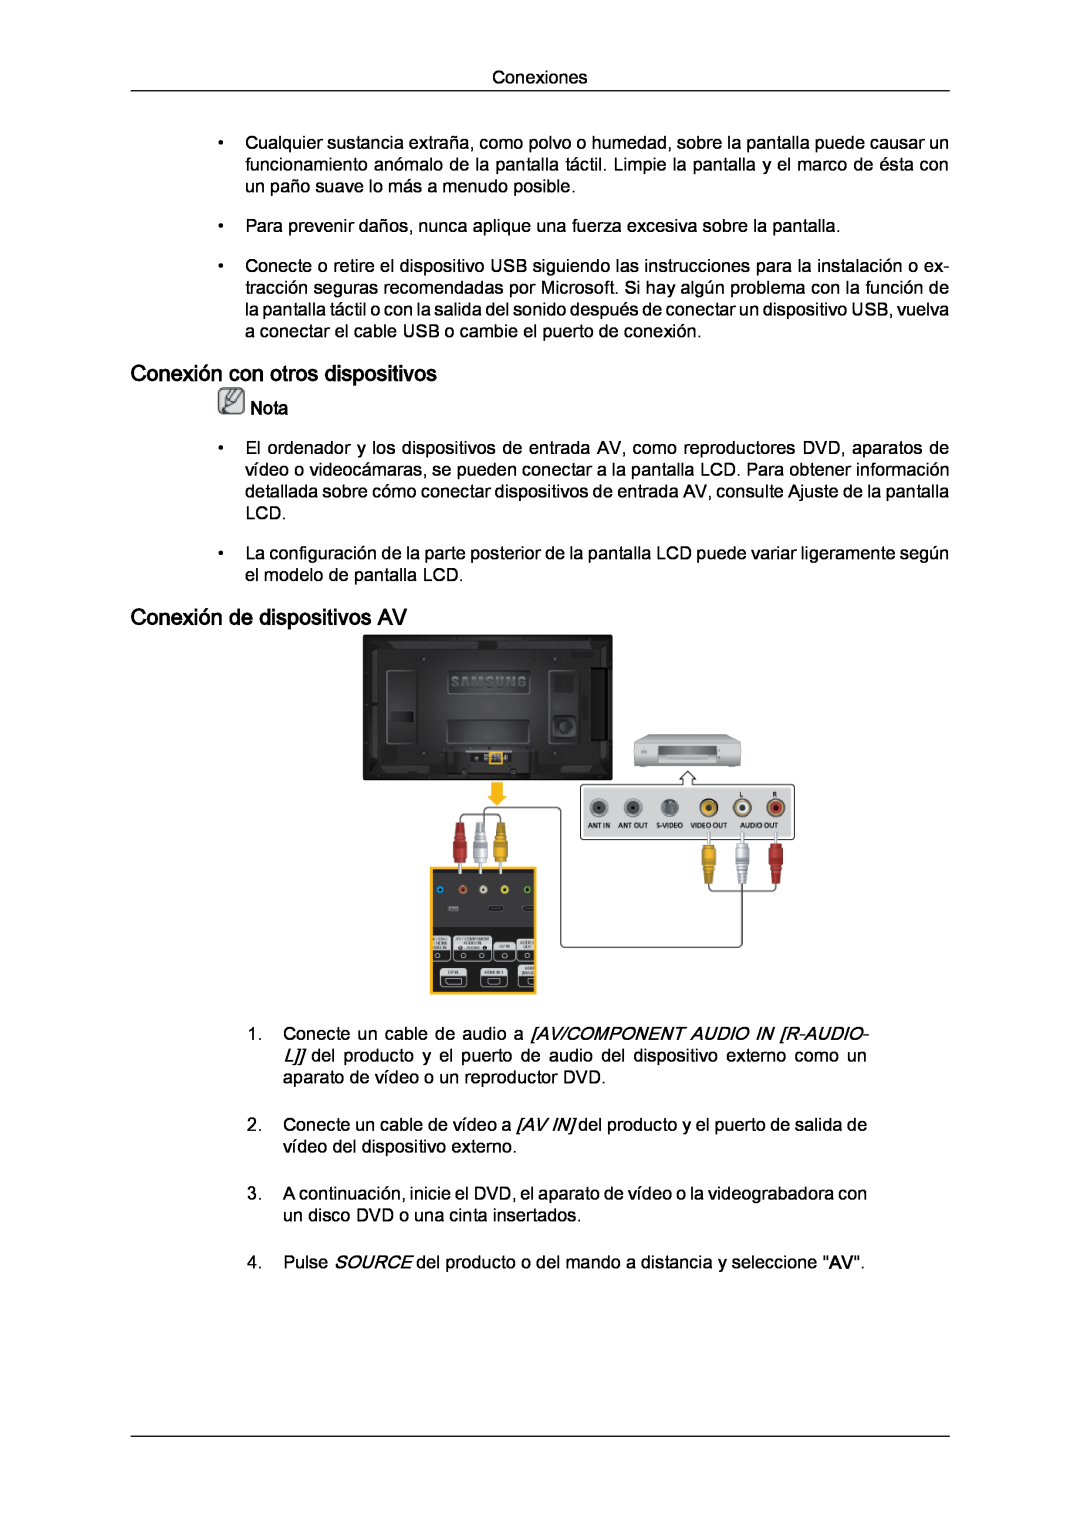 Samsung LH46CRPMBC/EN, LH46CRPMBD/EN, LH40CRPMBD/EN manual Conexión con otros dispositivos, Conexión de dispositivos AV, Nota 